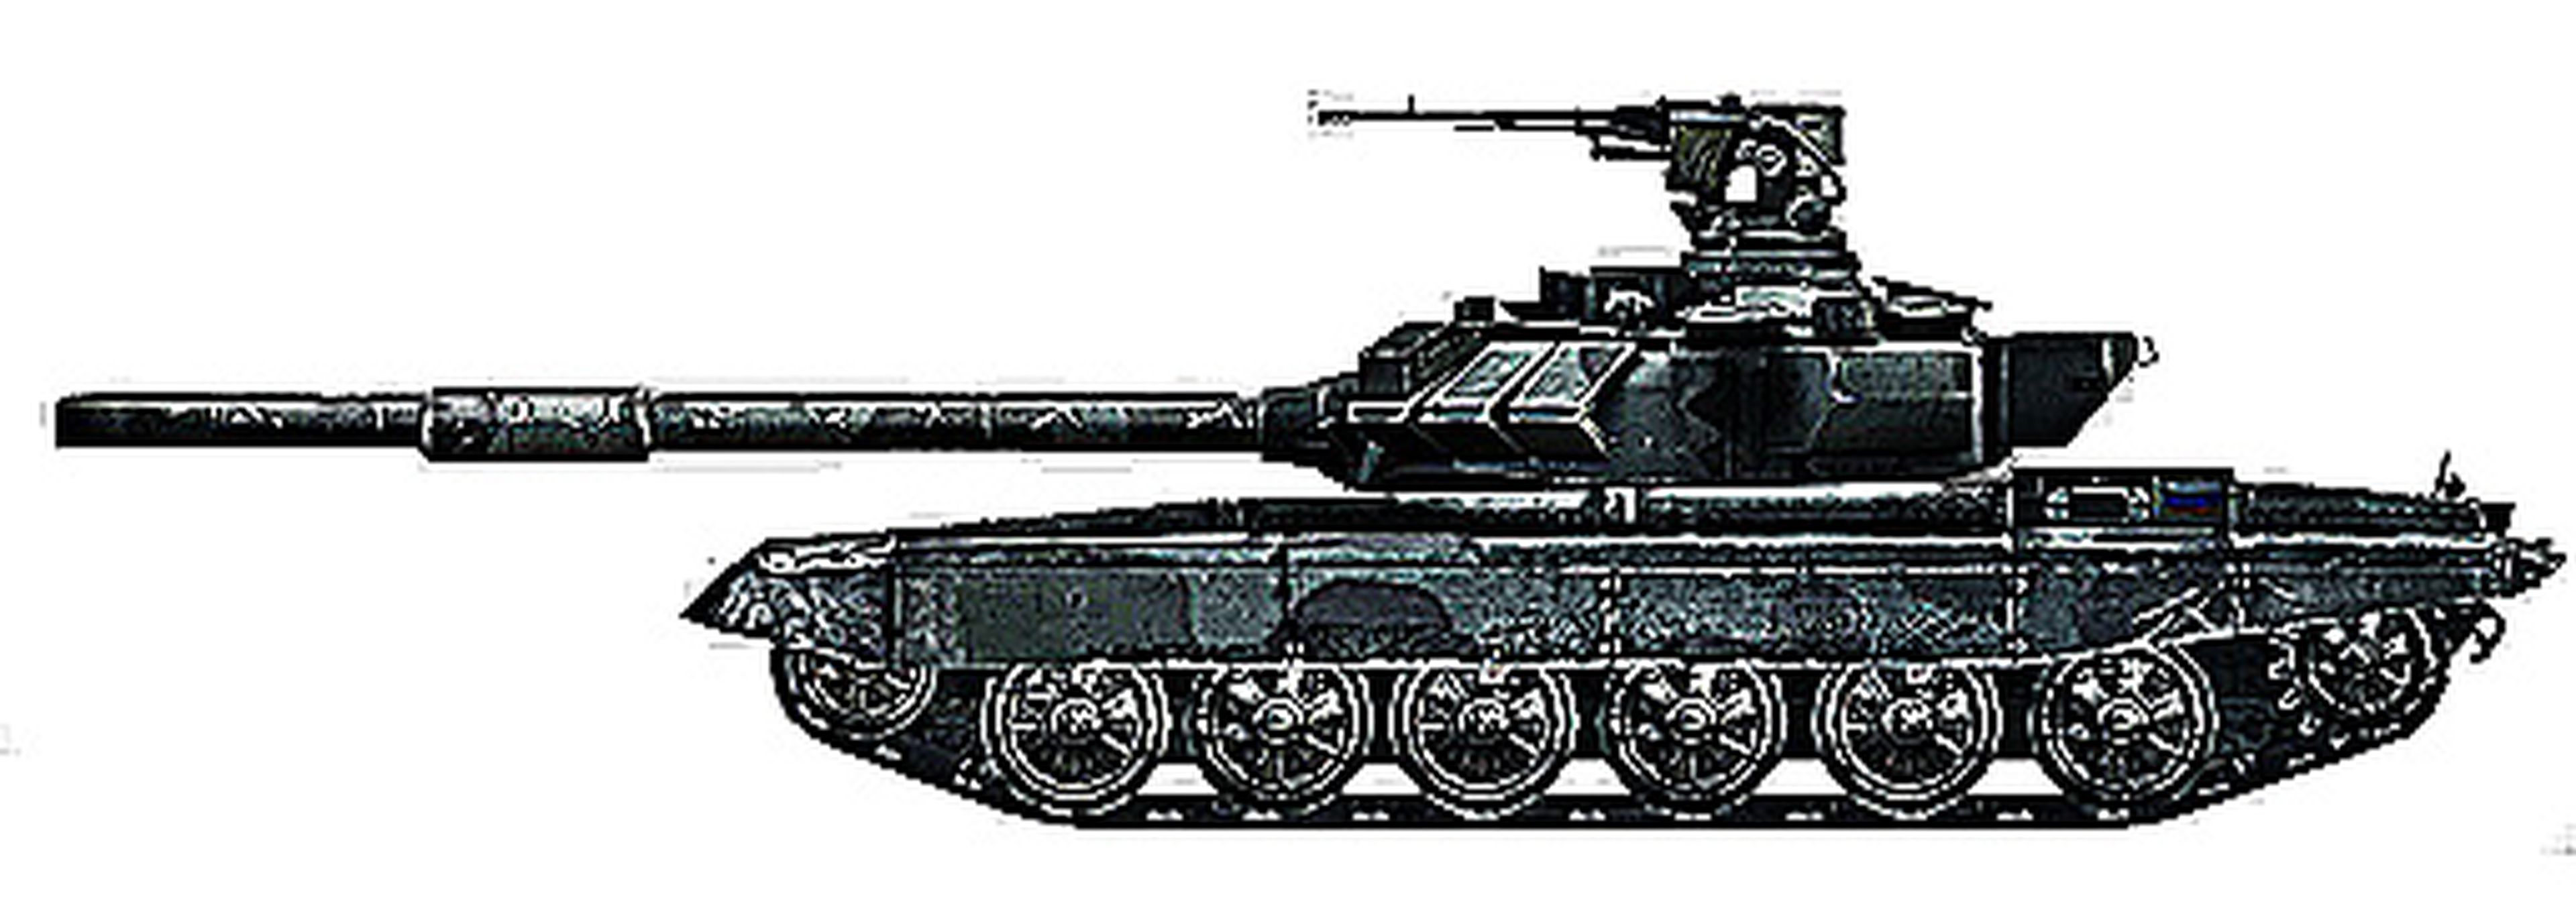 01. Vehículos blindados (tanques)